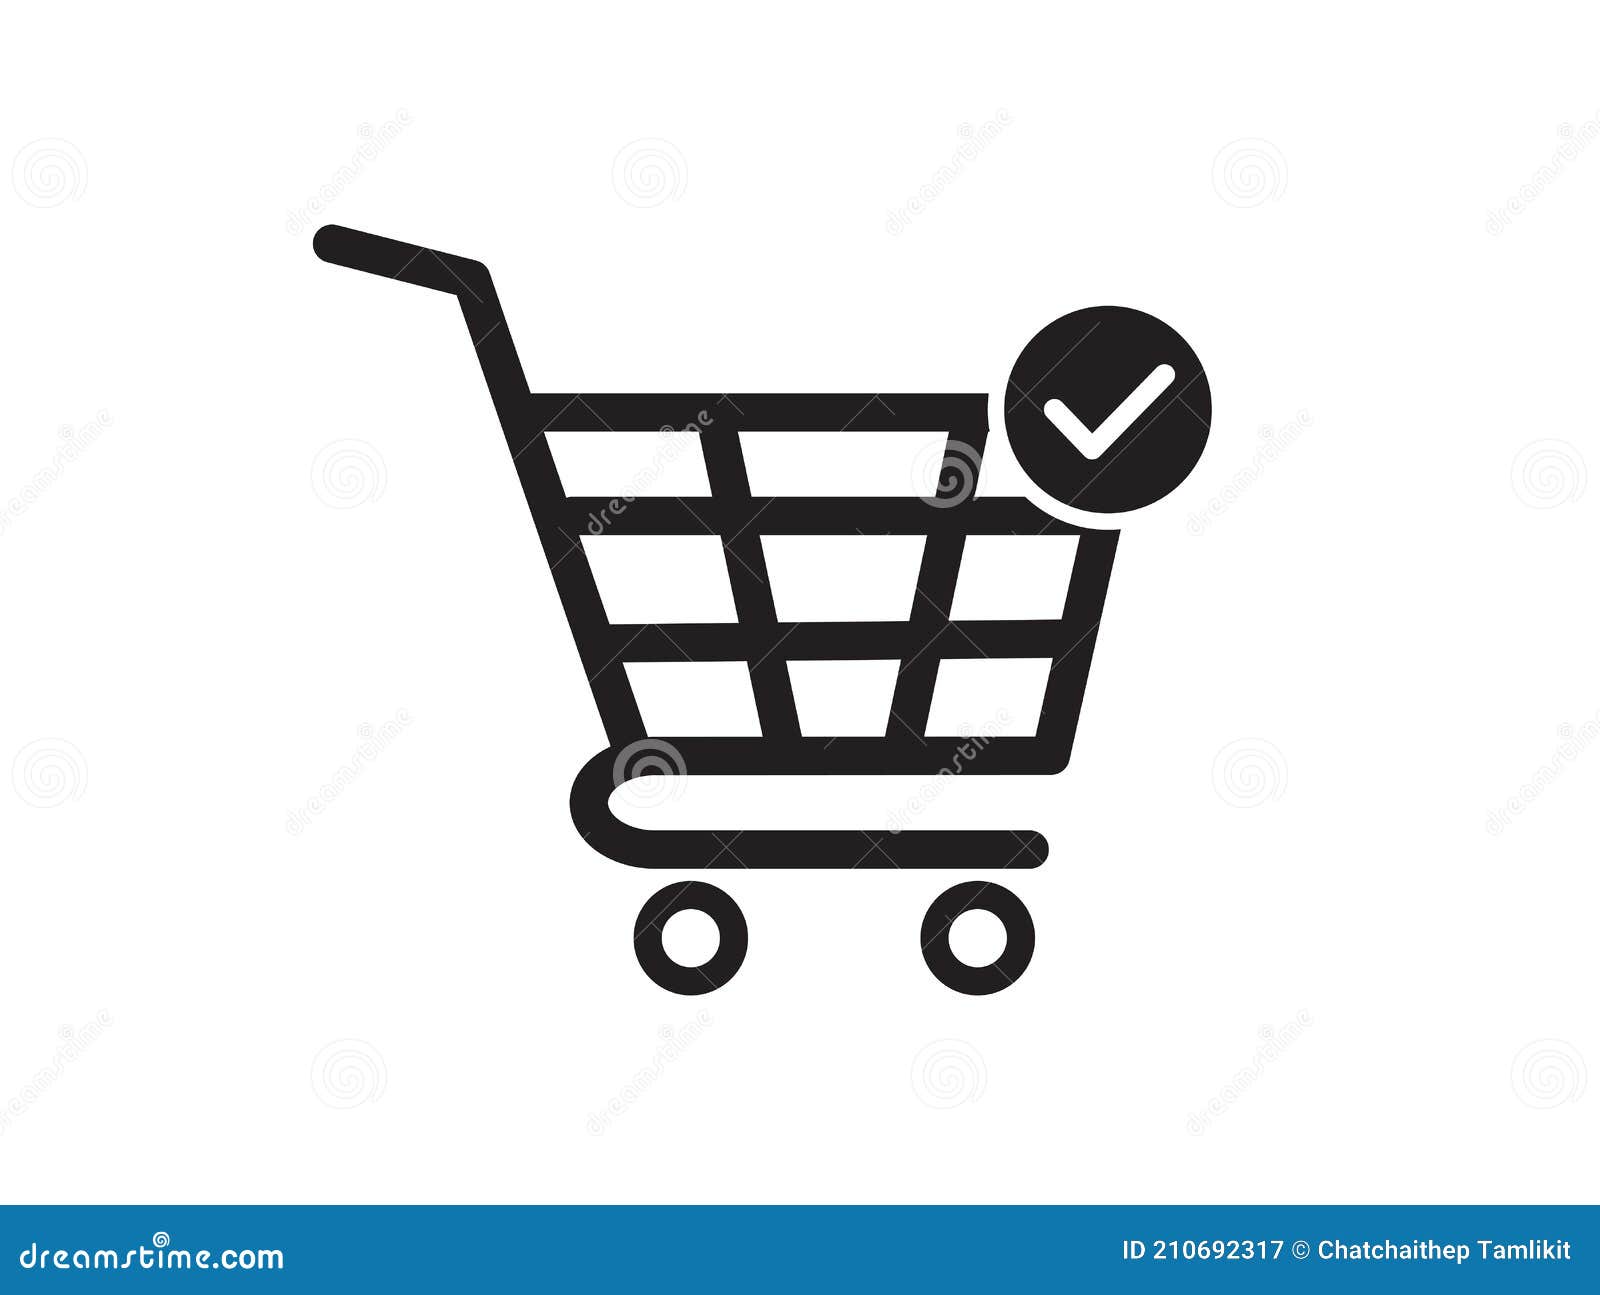 Biểu tượng giỏ hàng - Đây là biểu tượng phổ biến cho các trang web mua sắm. Hãy xem hình để tìm hiểu về quá trình mua sắm trực tuyến và cách thức bạn có thể tiết kiệm được nhiều hơn.